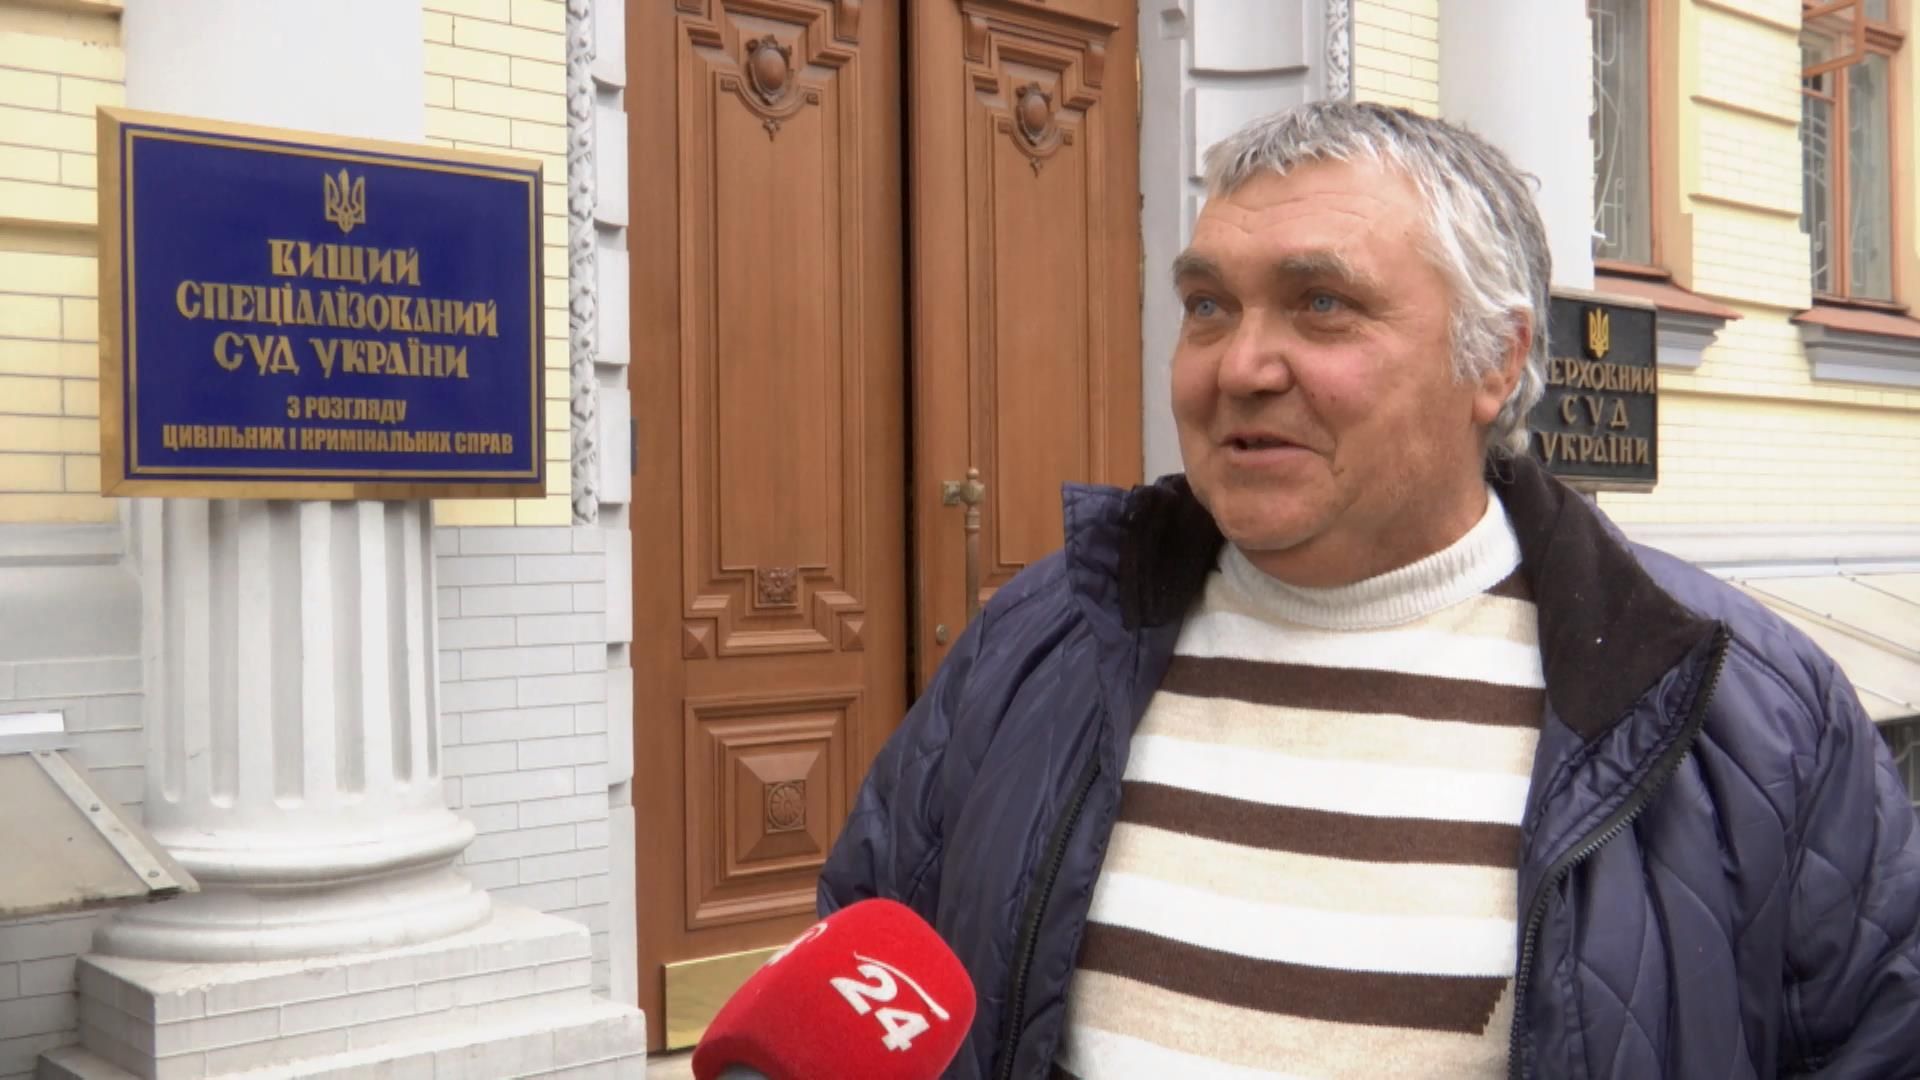 Волонтерское дело: он помогал украинской армии и поэтому попал на скамью подсудимых